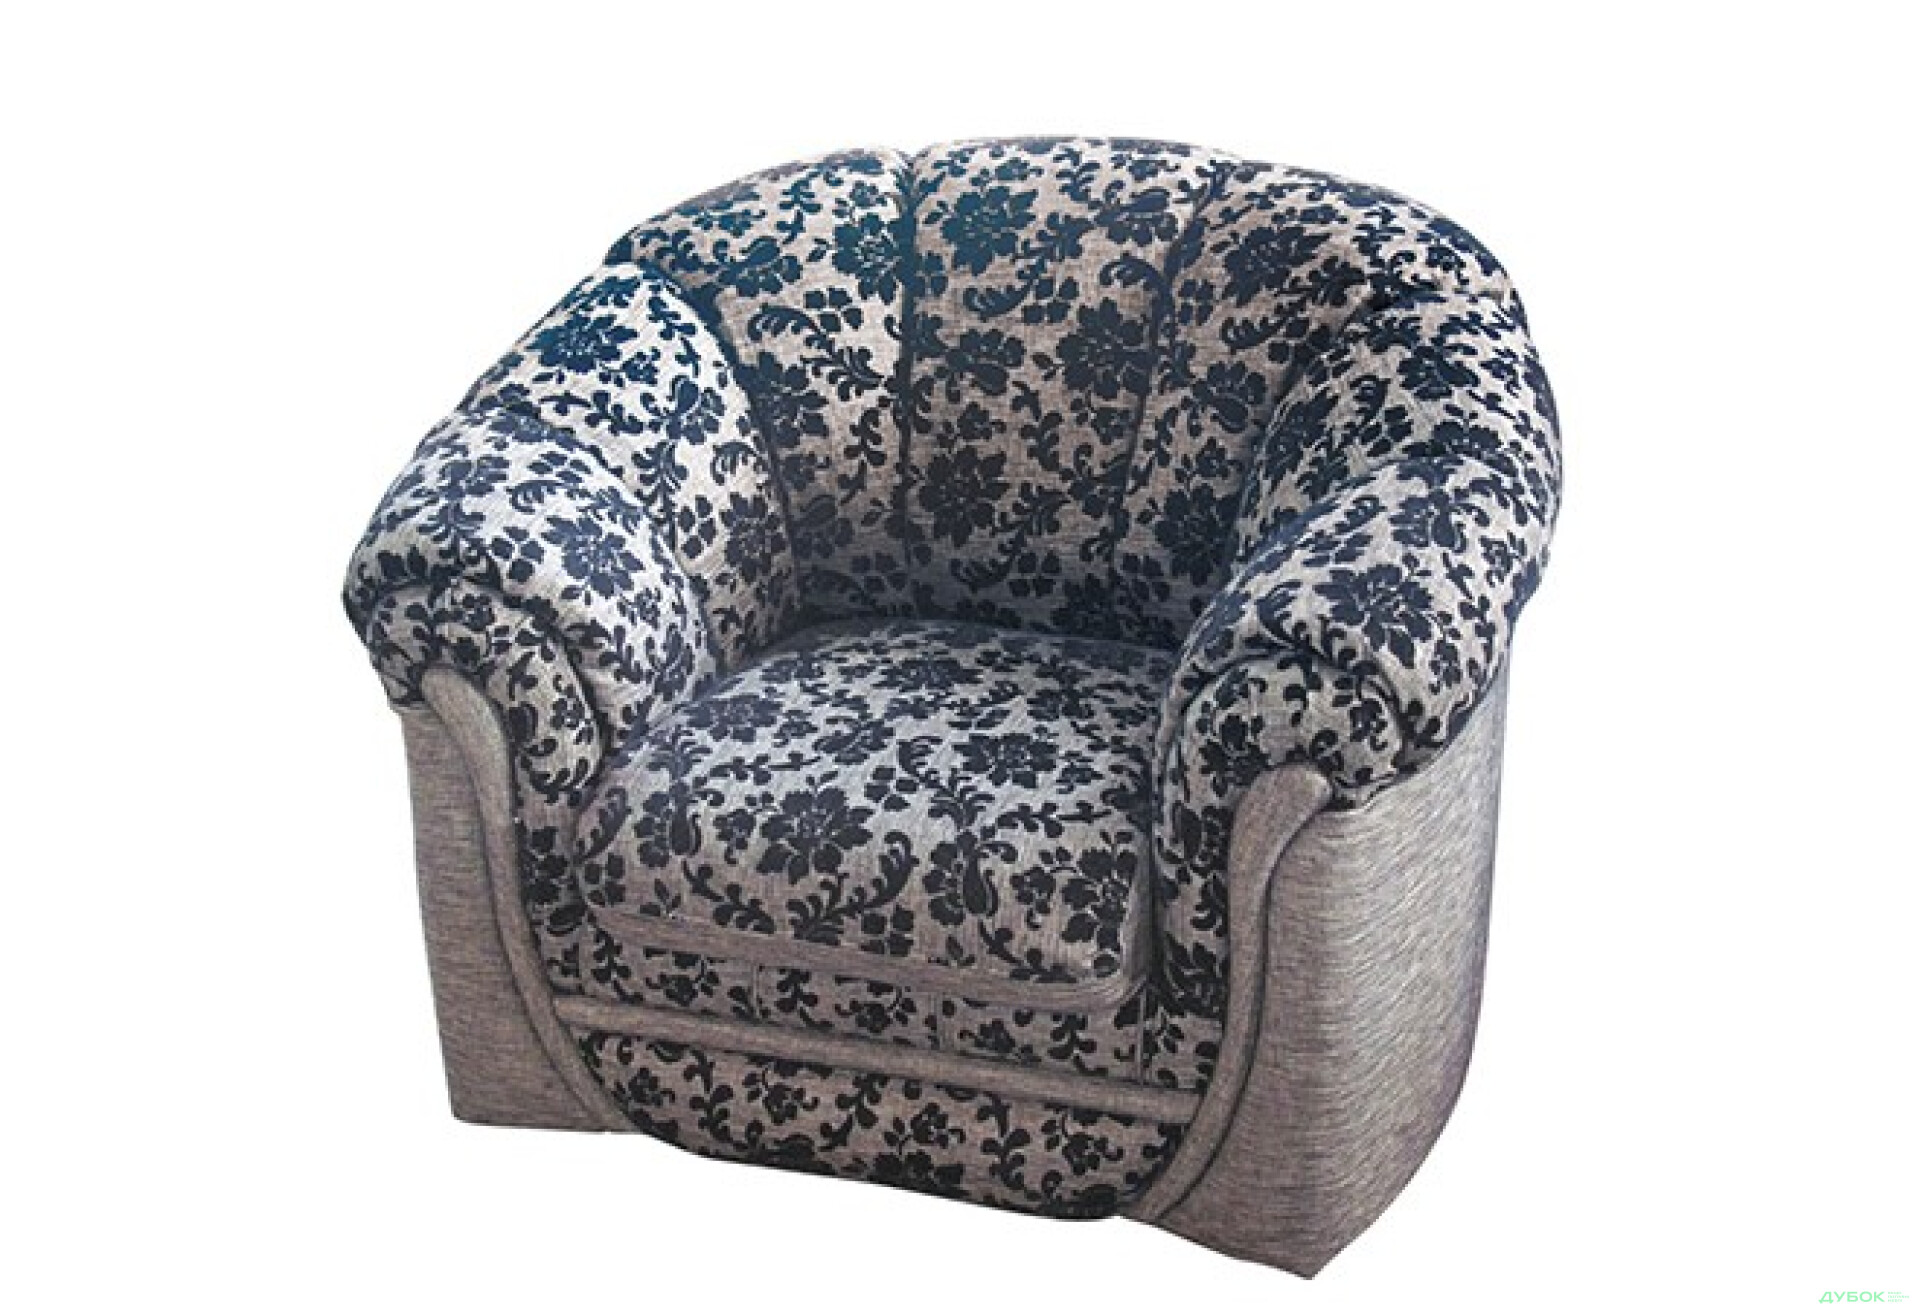 Фото 2 - Диван Каприз комплект: диван + 2 кресла Кожа Виком